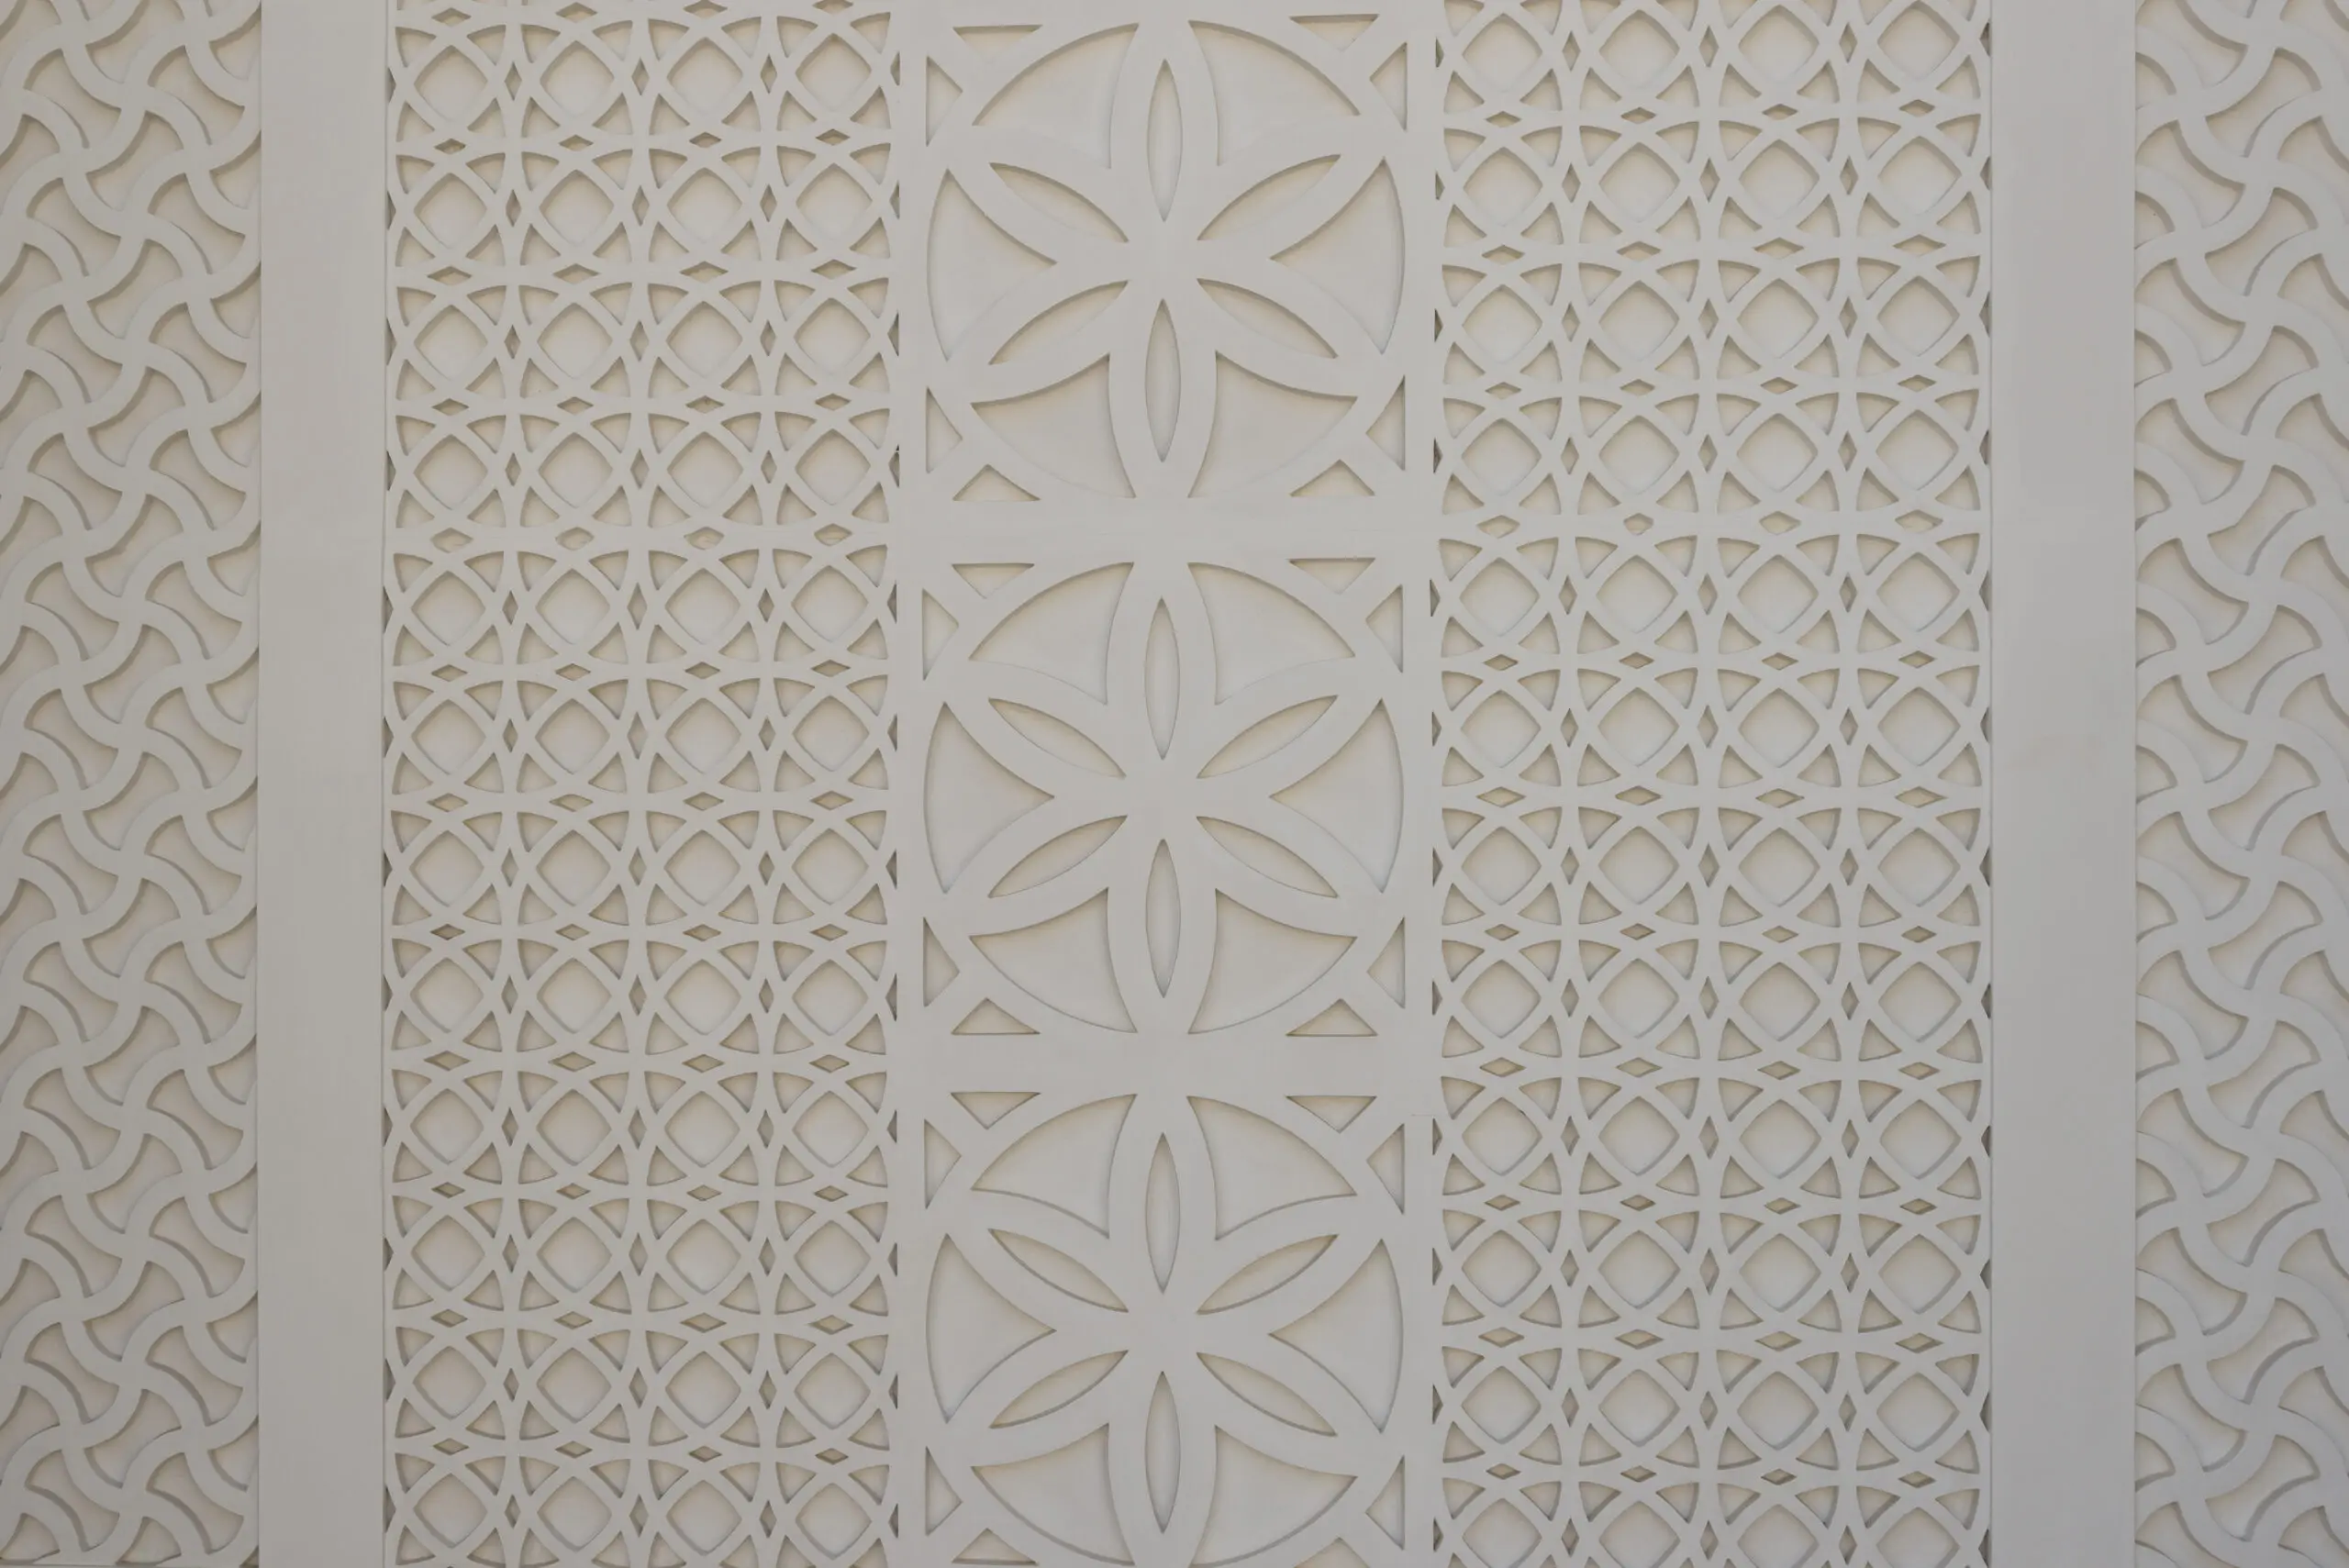 Wandbild (2161) Mosque präsentiert: Architektur,Detailaufnahmen